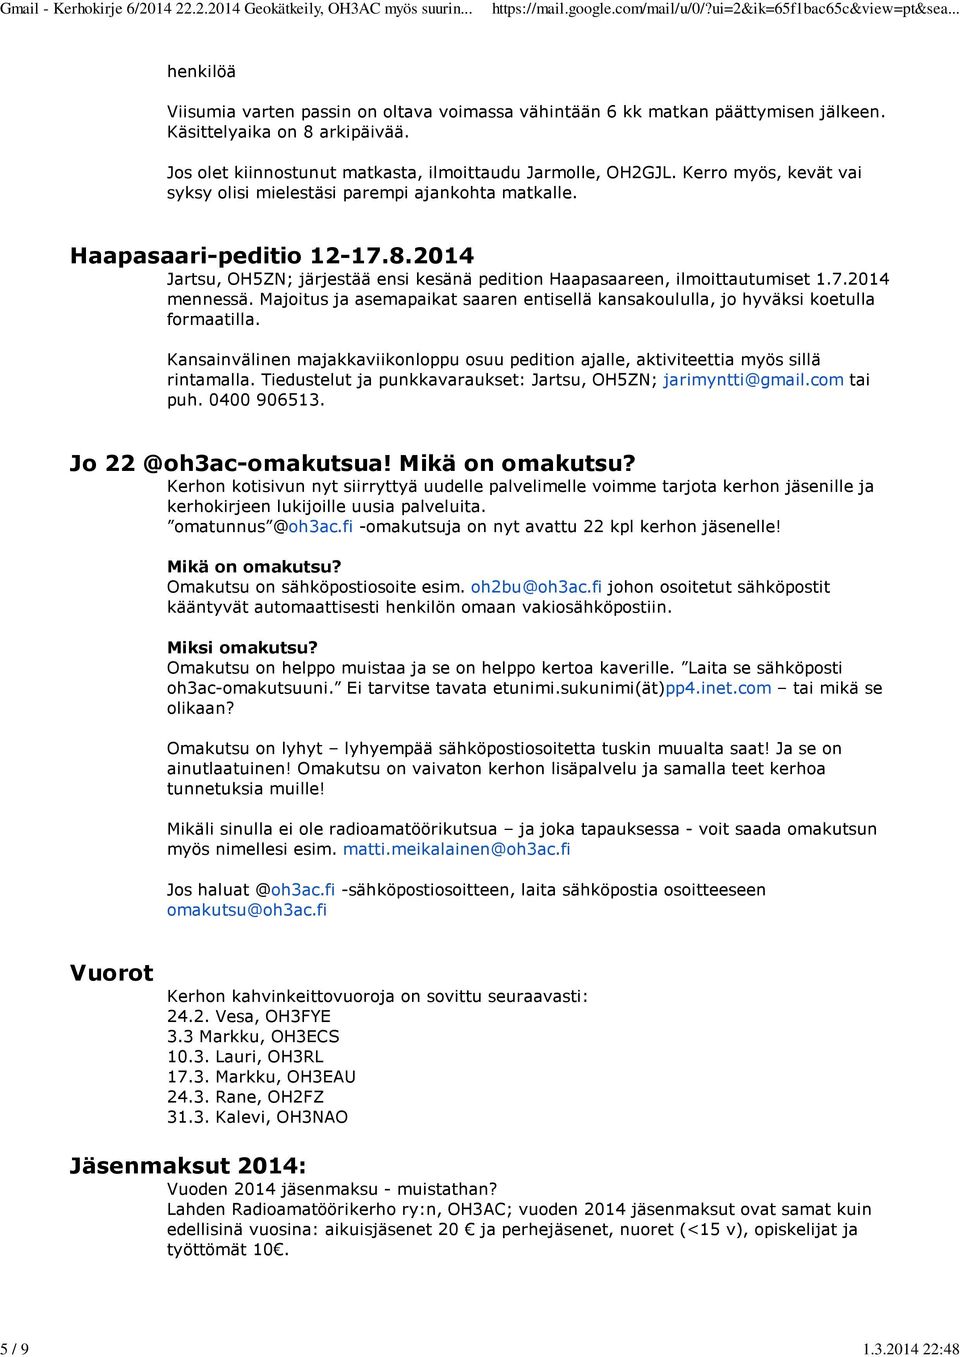 2014 Jartsu, OH5ZN; järjestää ensi kesänä pedition Haapasaareen, ilmoittautumiset 1.7.2014 mennessä. Majoitus ja asemapaikat saaren entisellä kansakoululla, jo hyväksi koetulla formaatilla.